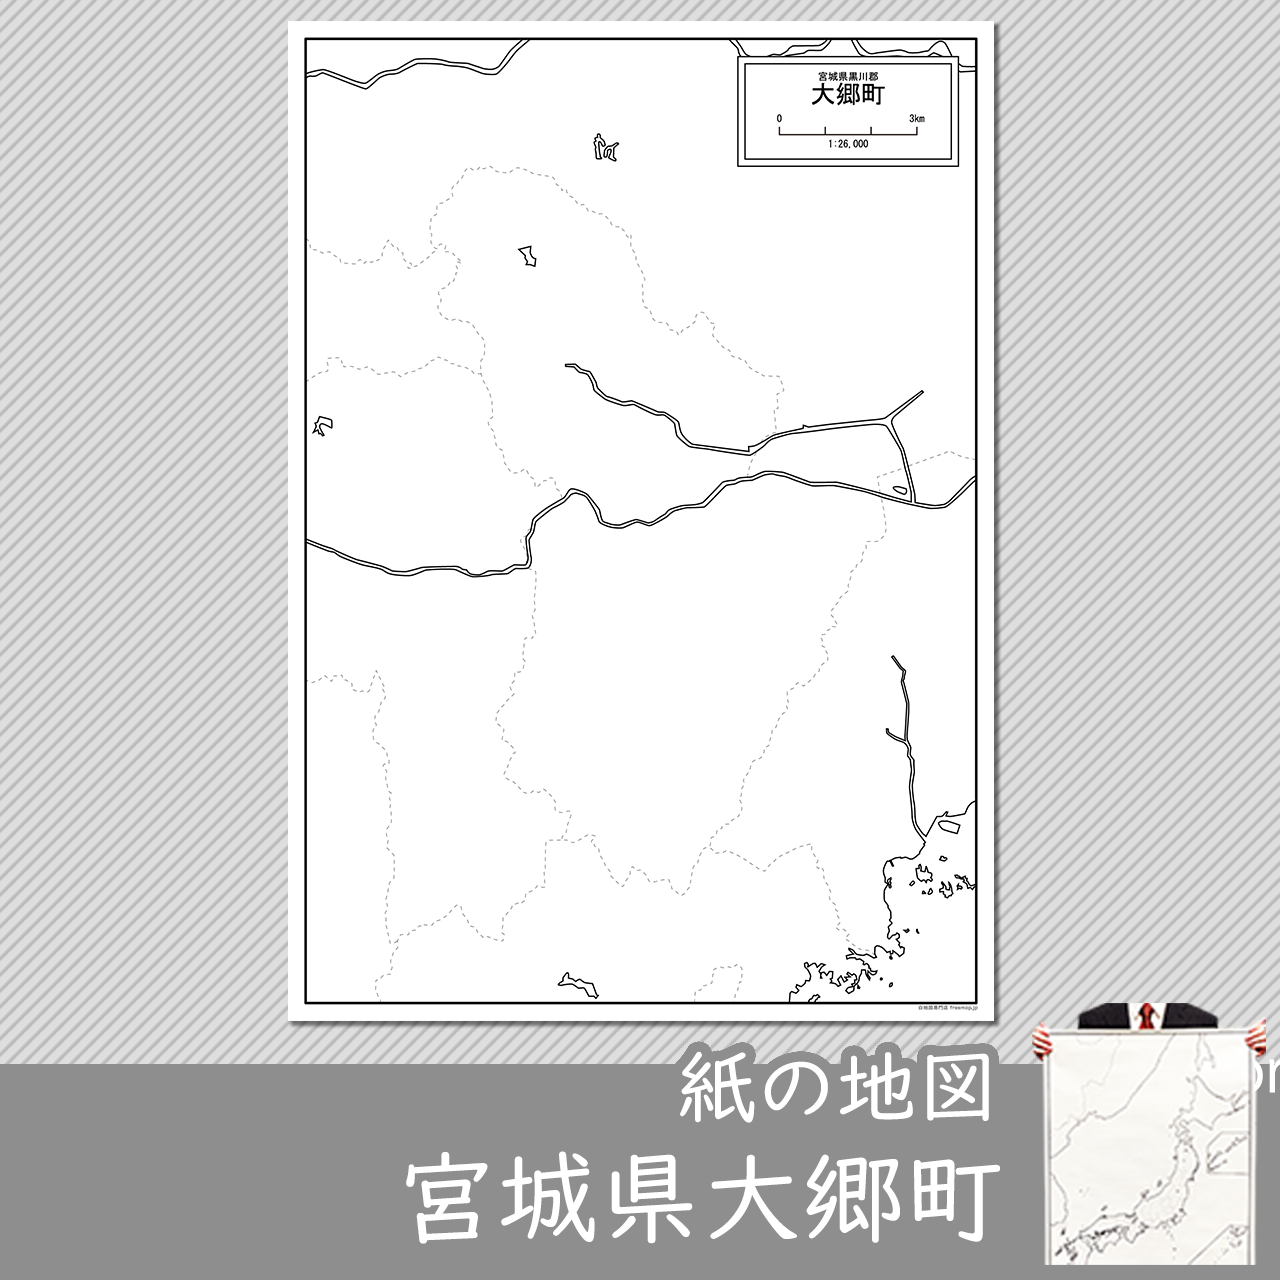 大郷町の紙の白地図のサムネイル